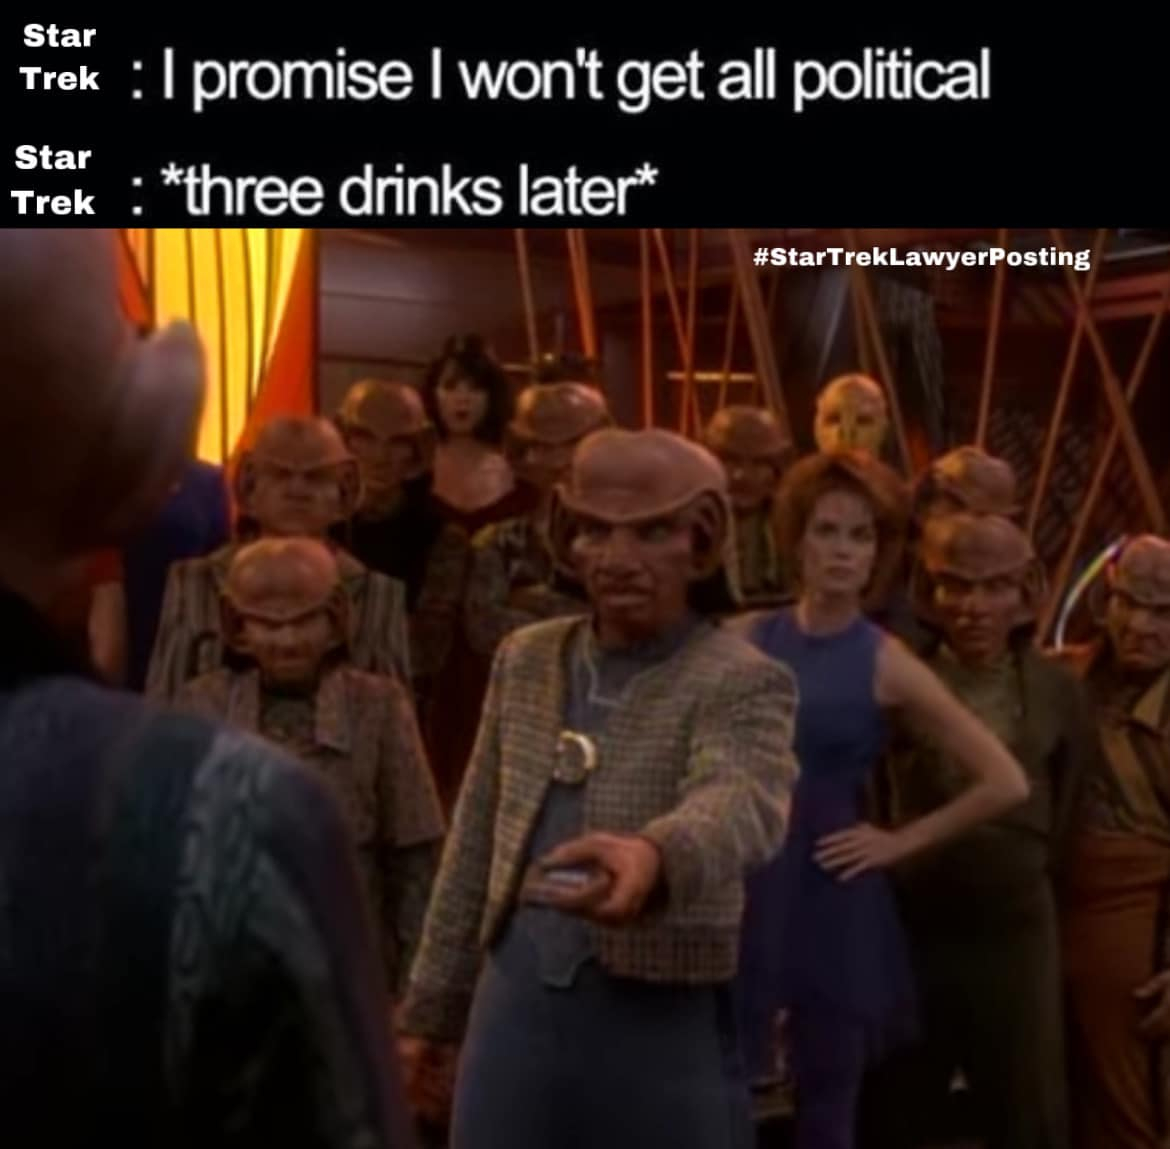 funny memes - dank memes - audience - Star Trek I promise I won't get all political Trek three drinks later Star